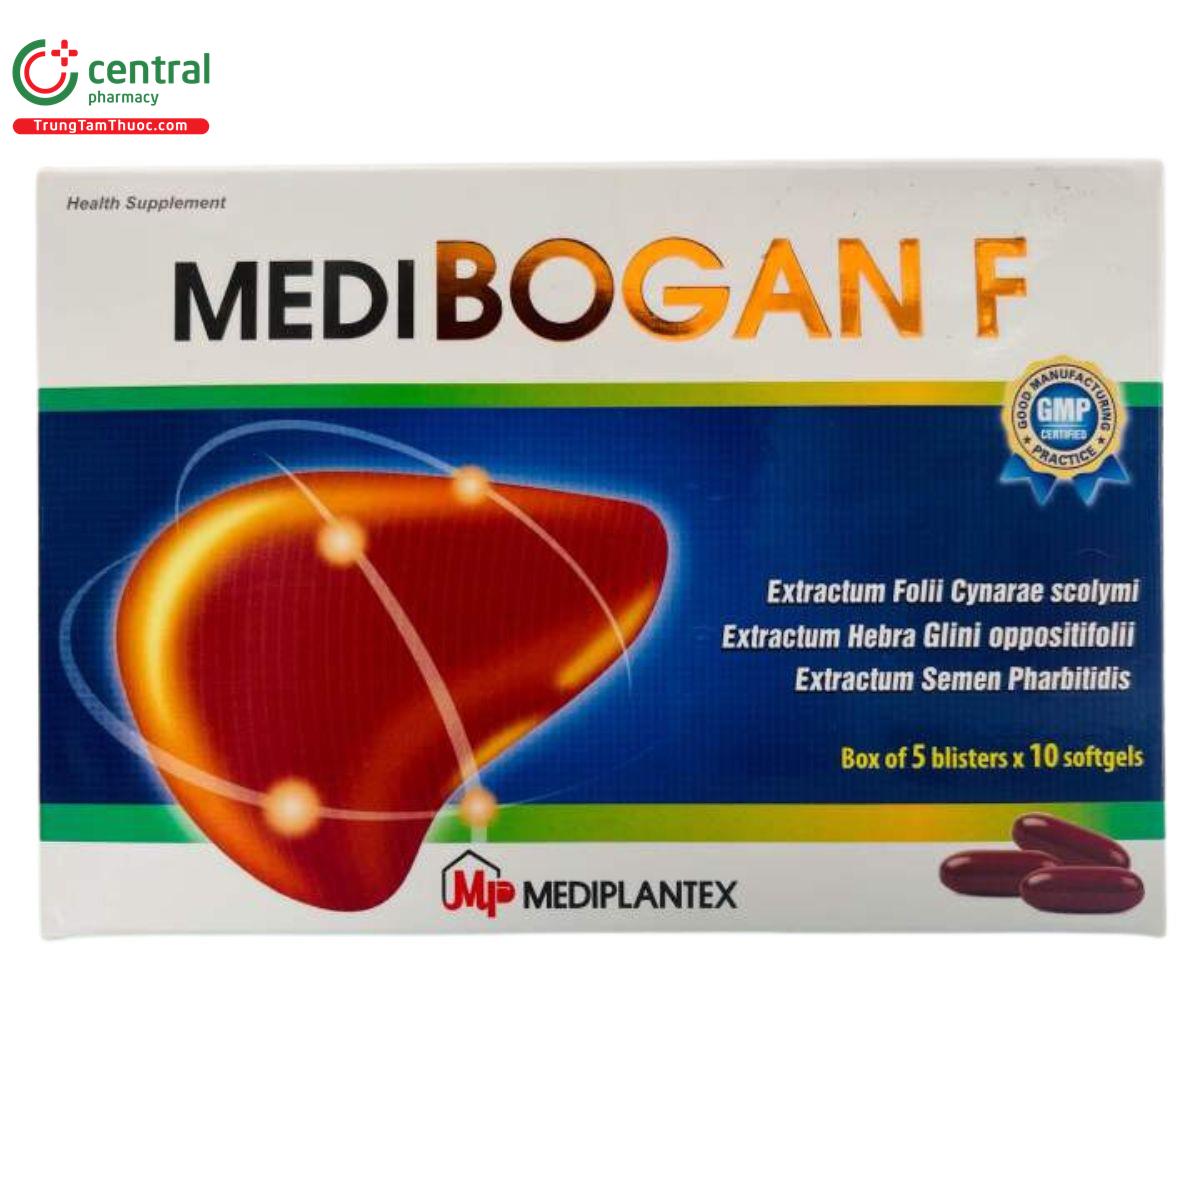 medibogan f 3 E1344